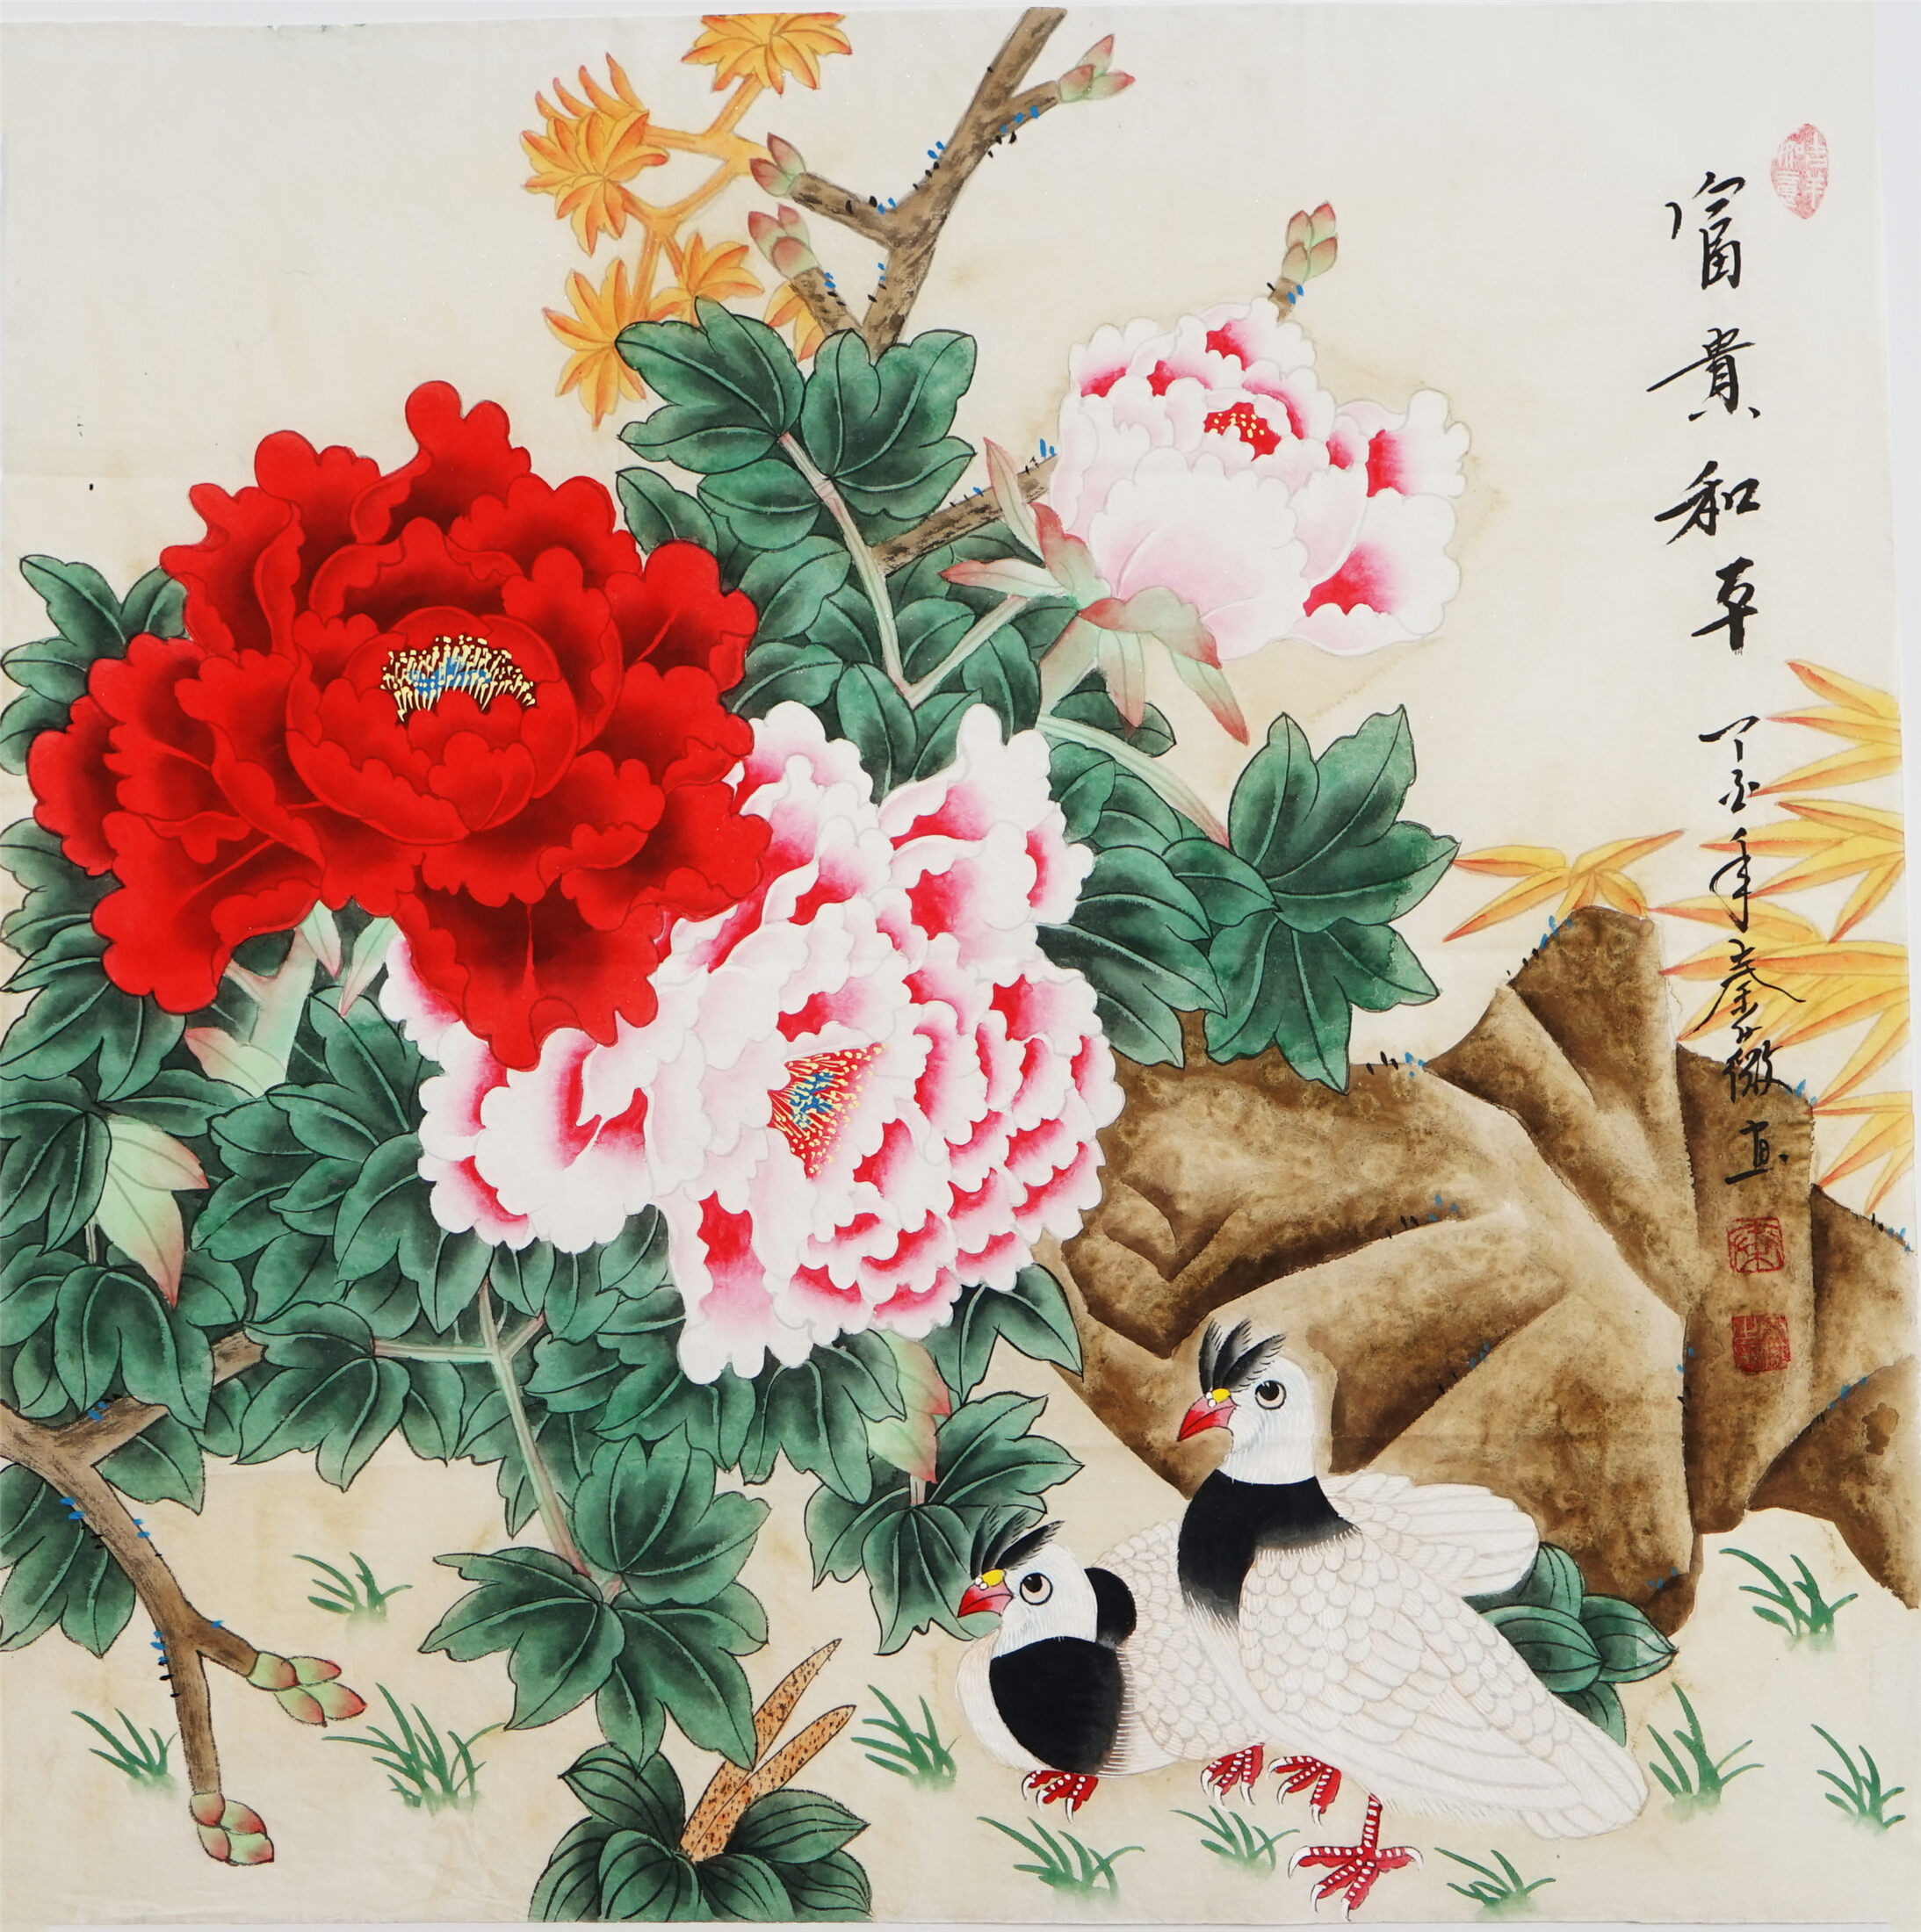 Tranh Trung Quốc (Chinese painting): Tranh Trung Quốc với những nét vẽ ấn tượng, những đường quét thanh lịch, không chỉ nói lên vẻ đẹp và sự thấu hiểu của họ với tự nhiên mà còn truyền tải những giá trị văn hóa đặc sắc của Trung Hoa. Mỗi bức tranh là một tác phẩm nghệ thuật tuyệt vời, để lại sự ấn tượng khó phai cho mỗi tâm hồn yêu nghệ thuật.